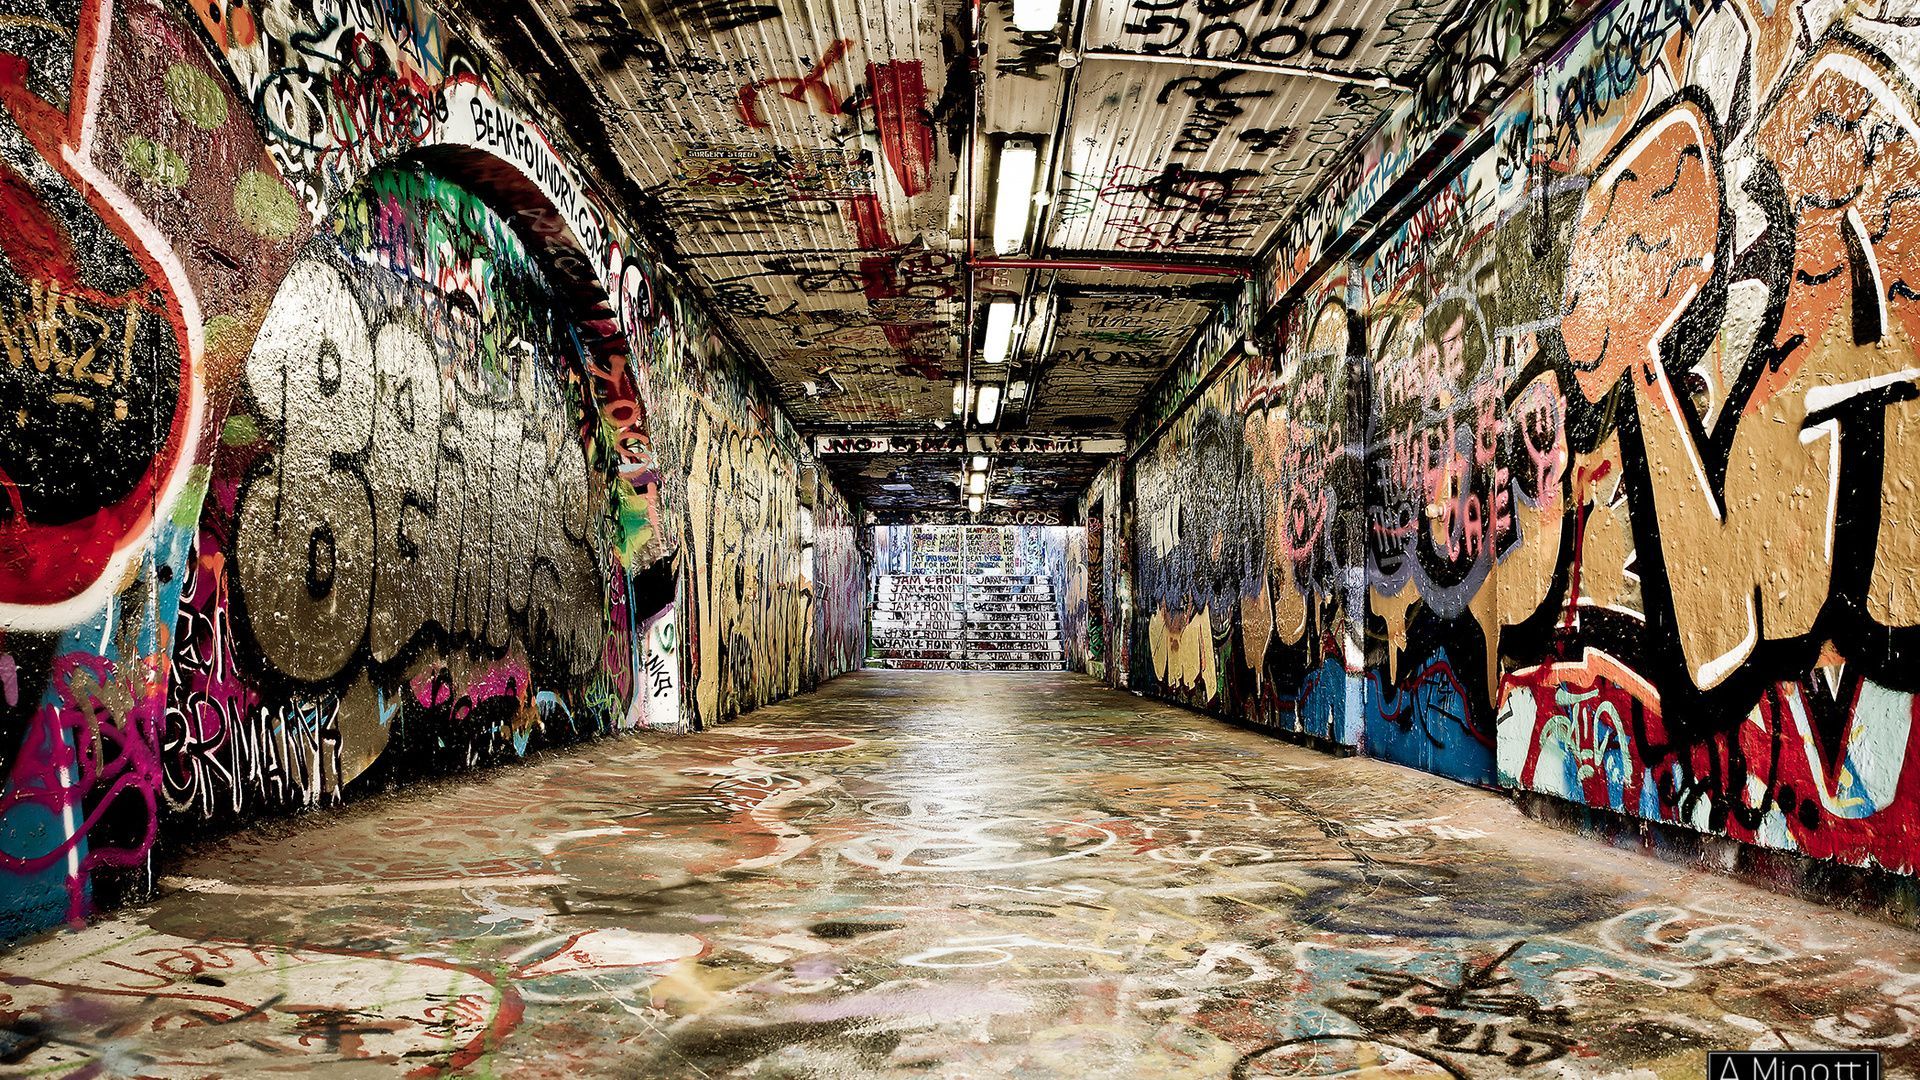 rap graffiti wallpapers